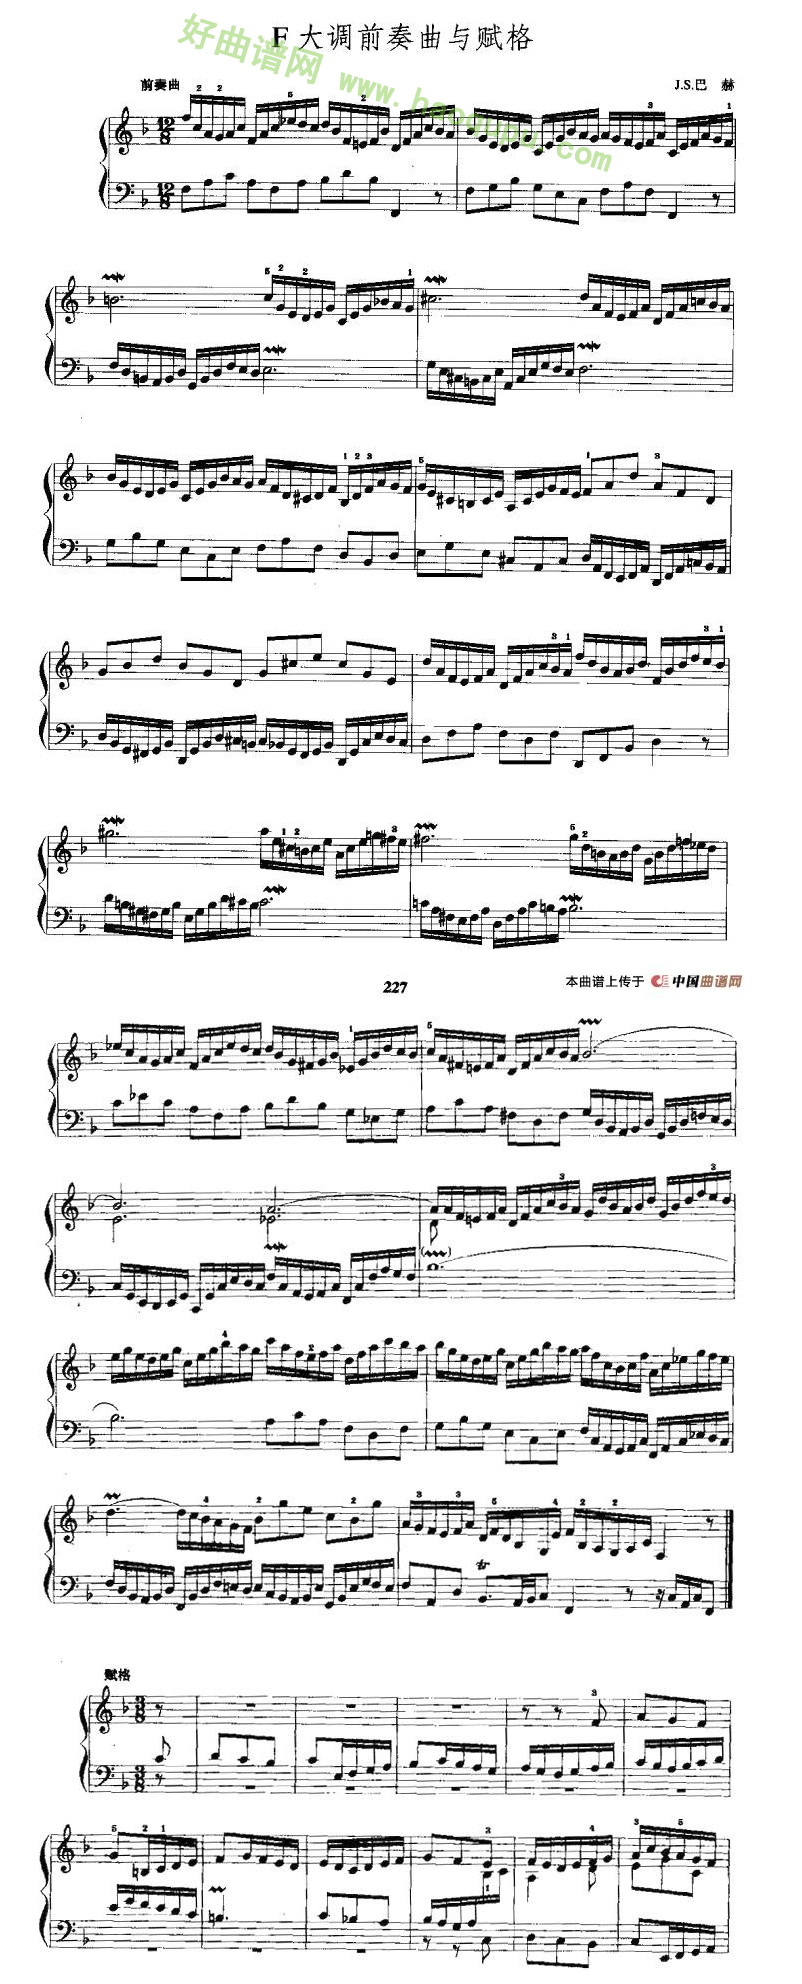 《F大调前奏曲与赋格》 手风琴曲谱第1张